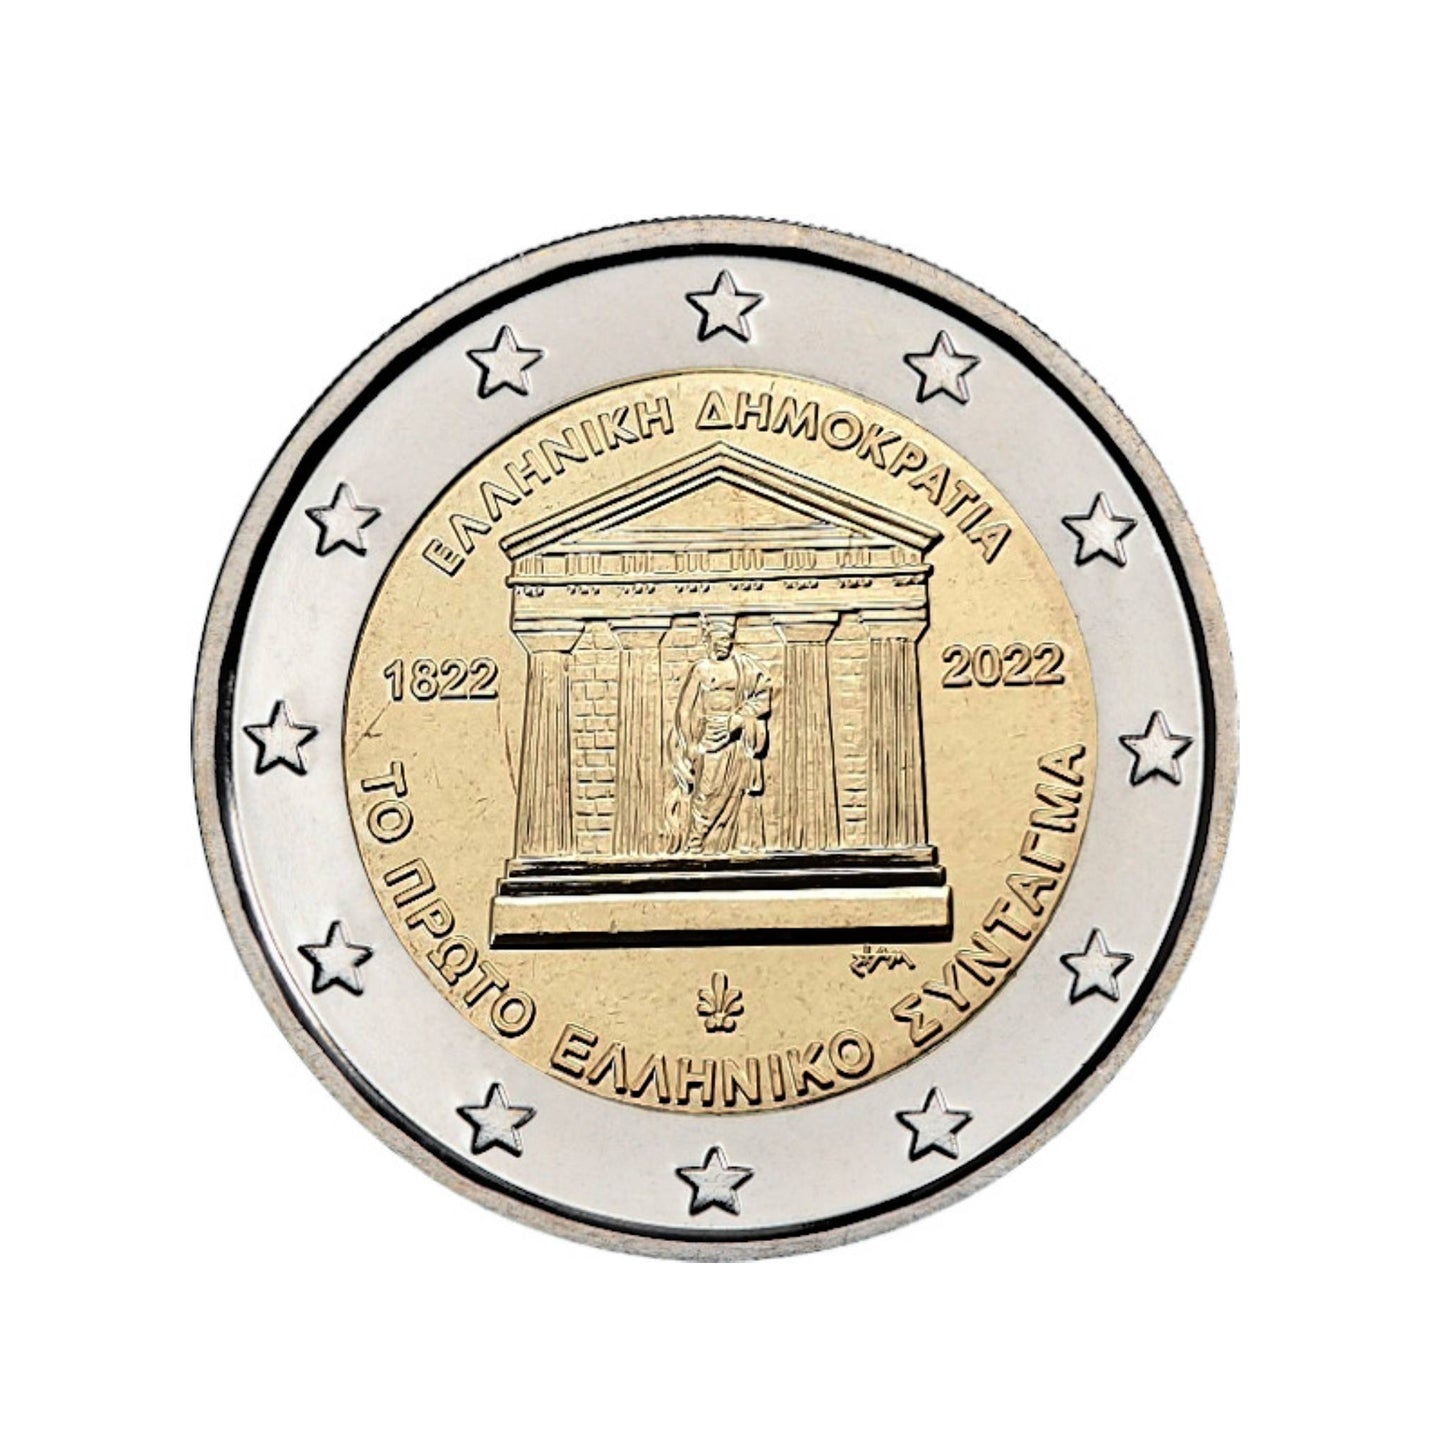 Grecia - Moneda 2 euros conmemorativa 2022 - 200 Años de la Constitución